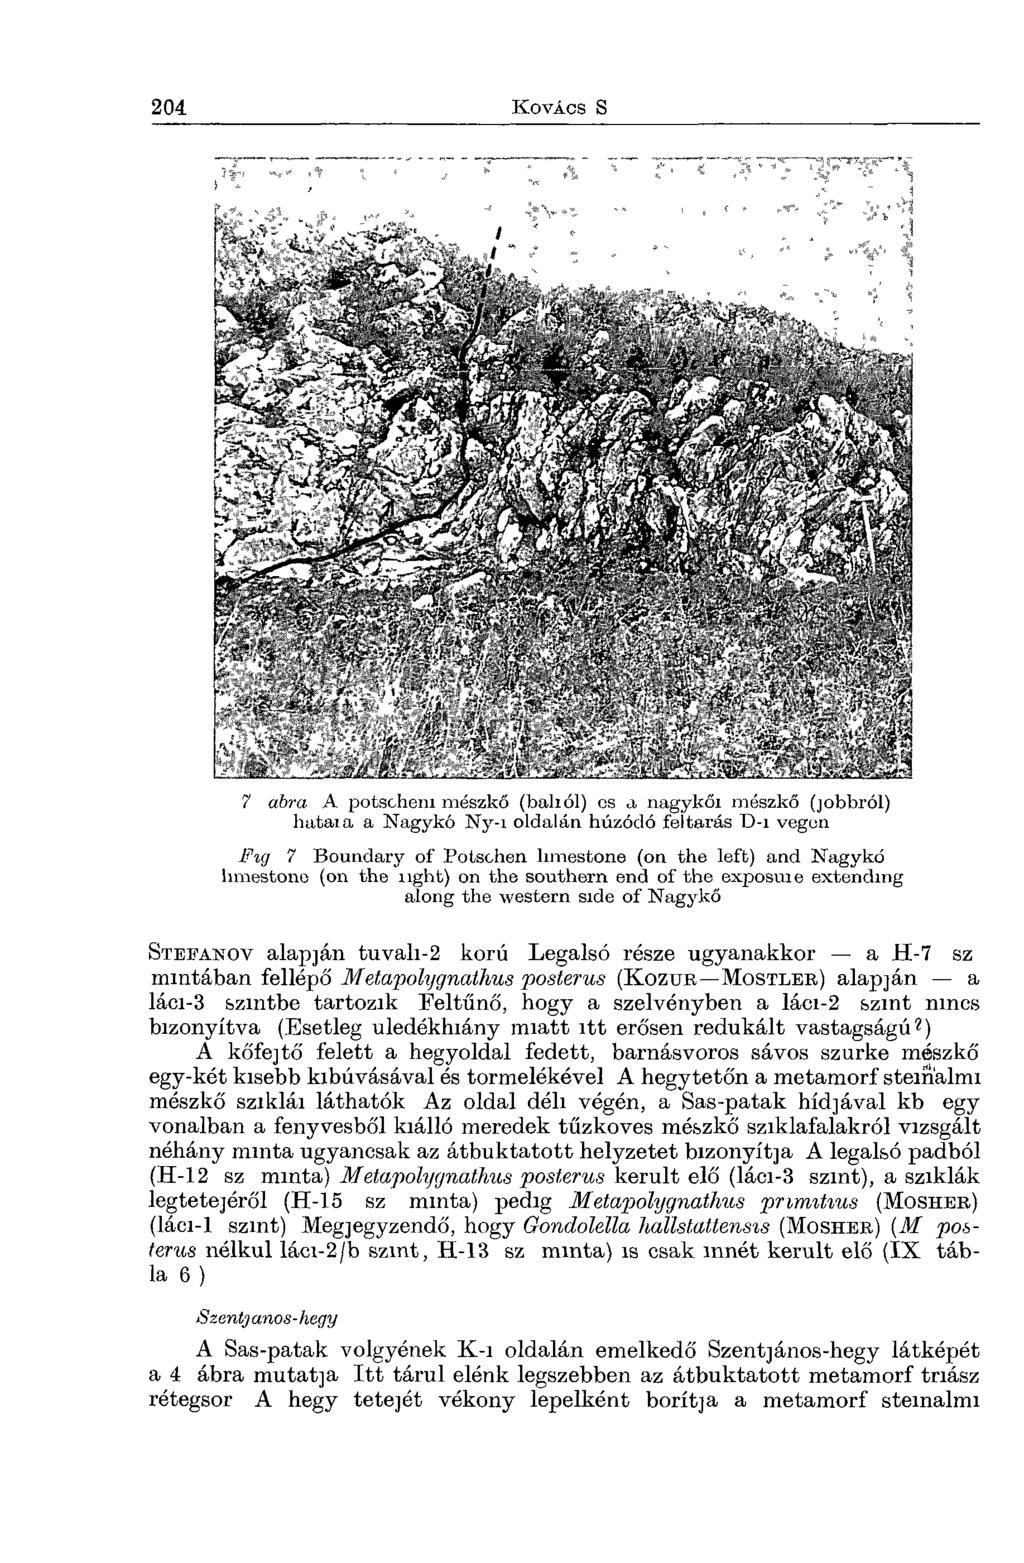 7 abra A potschem mészkő (baliól) cs a nagykői mészkő (jobbról) hataia a Nagykő Ny-i oldalán húzódó feltárás D-i végén Fig 7 Boundary of Potschen limestone (on the left) and Nagykő limestone (on the